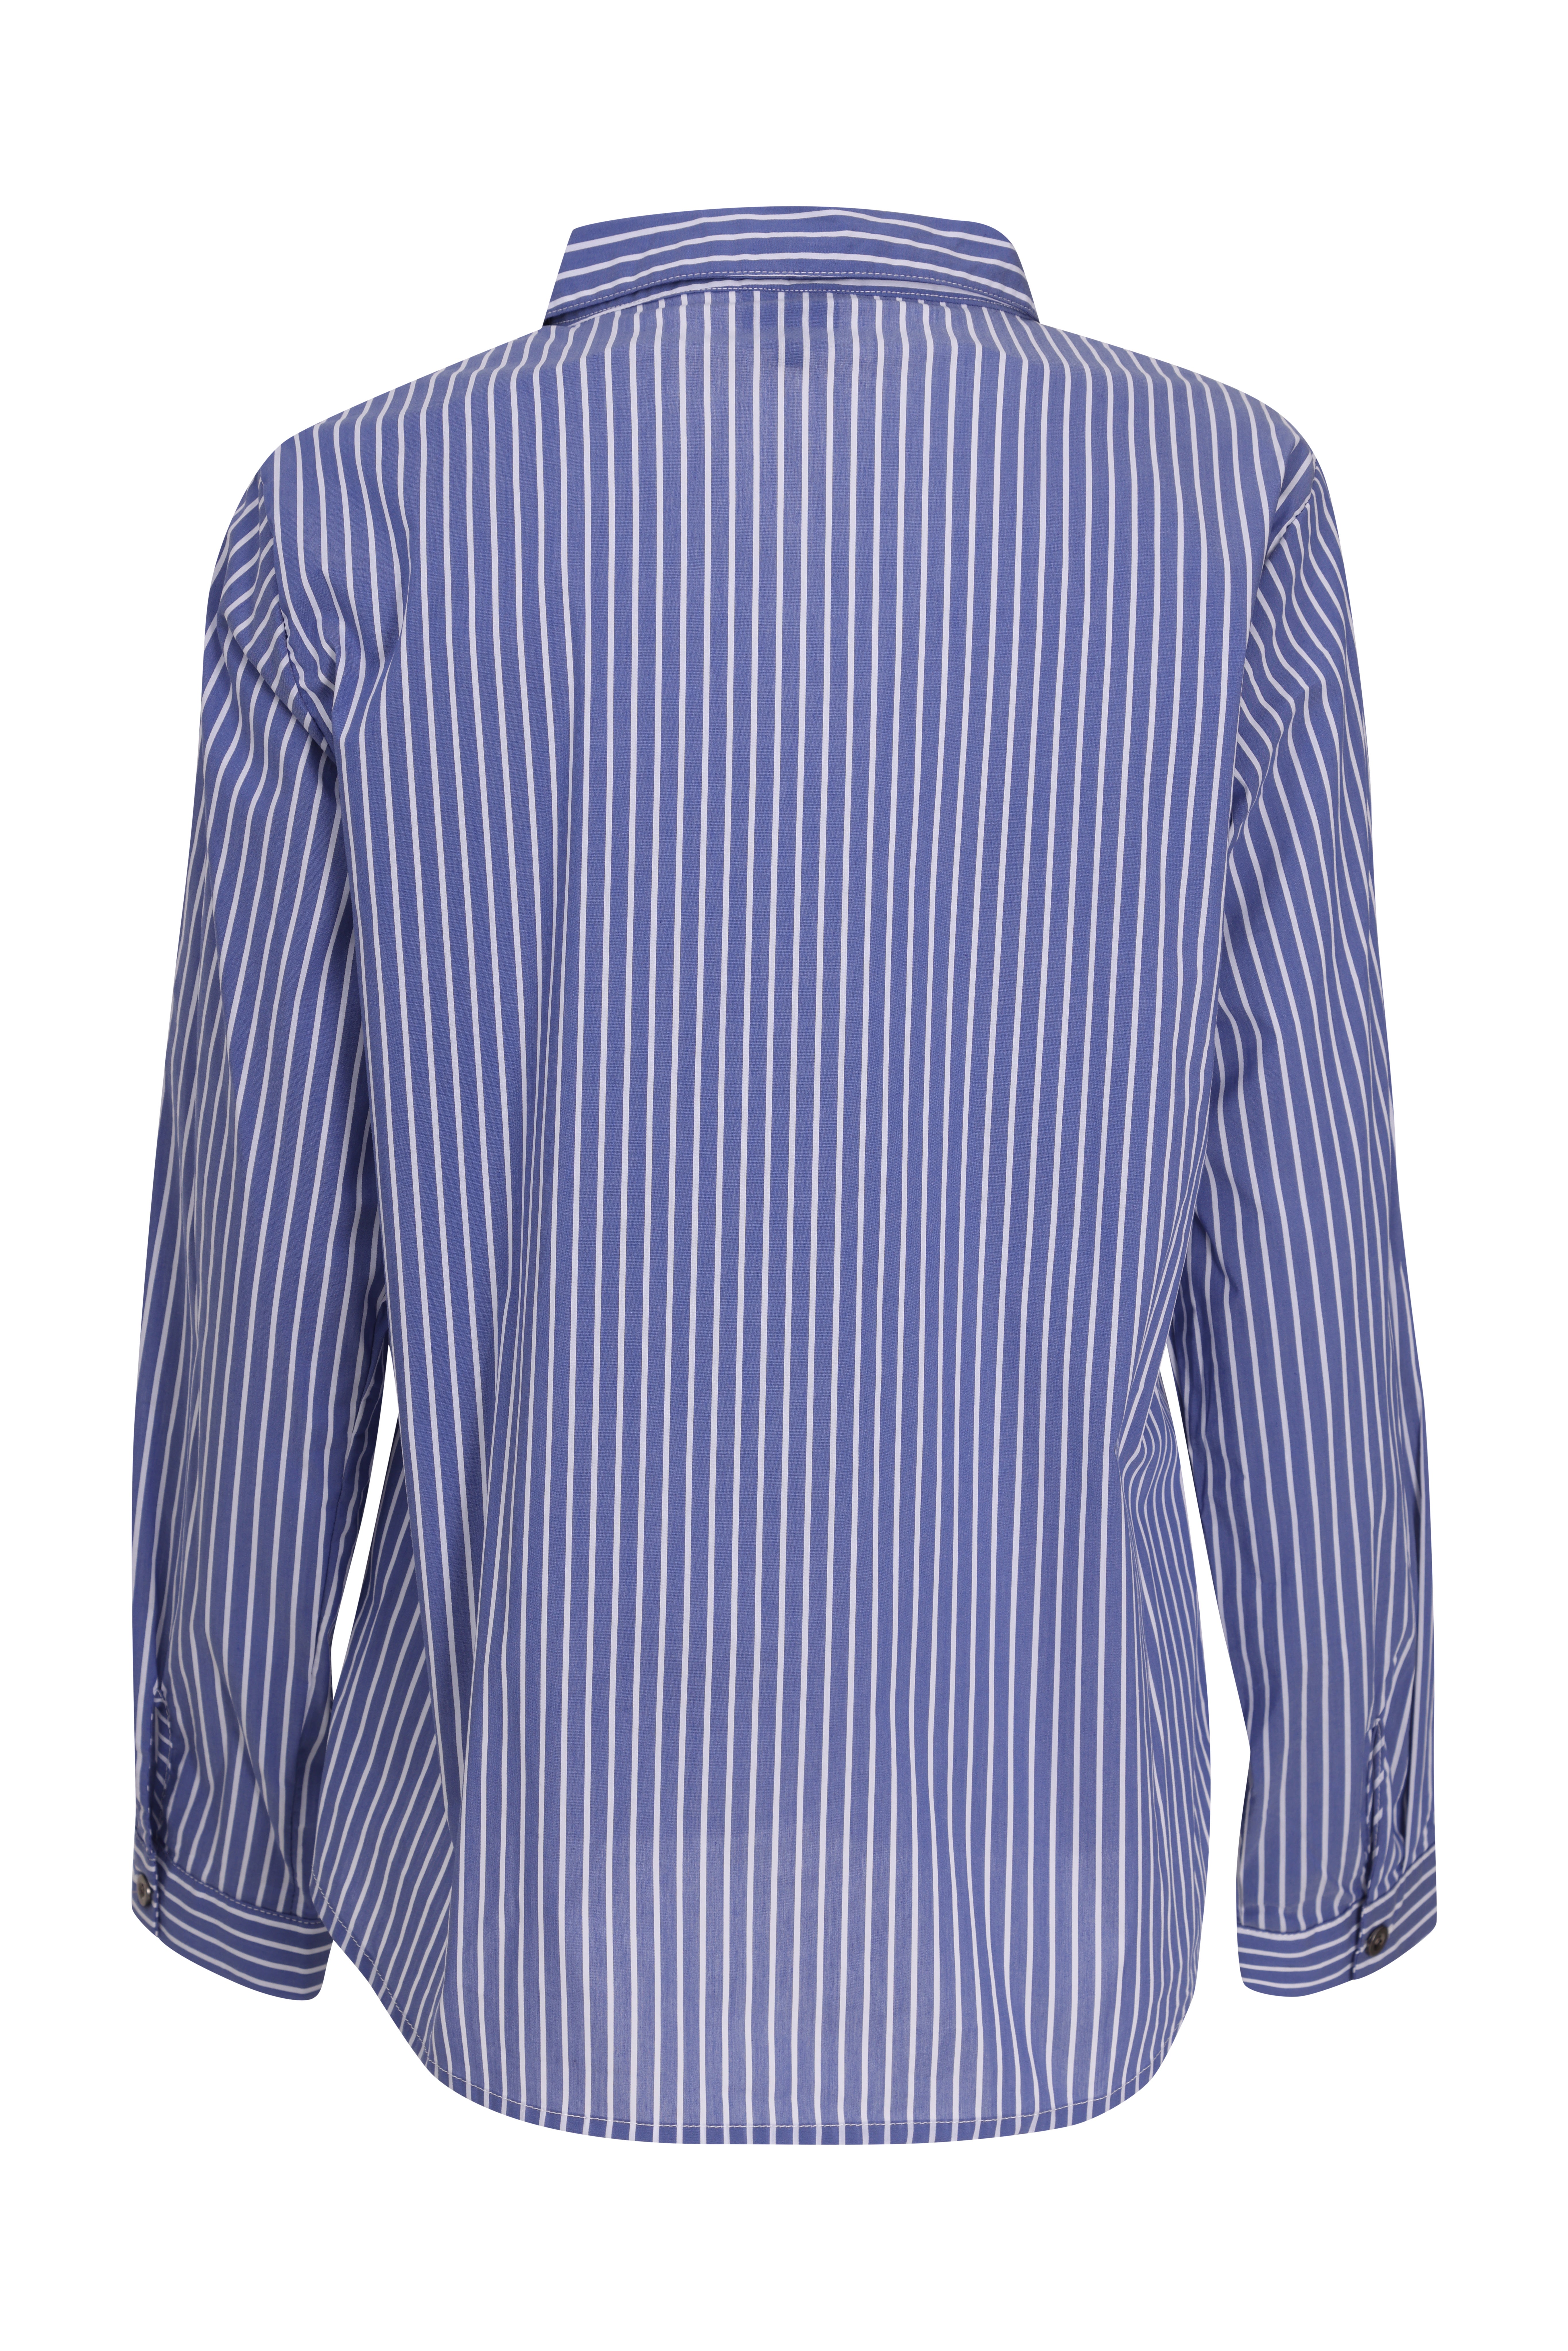 Xirena Jody Stripe Cotton Shirt - Sail Blue on Garmentory